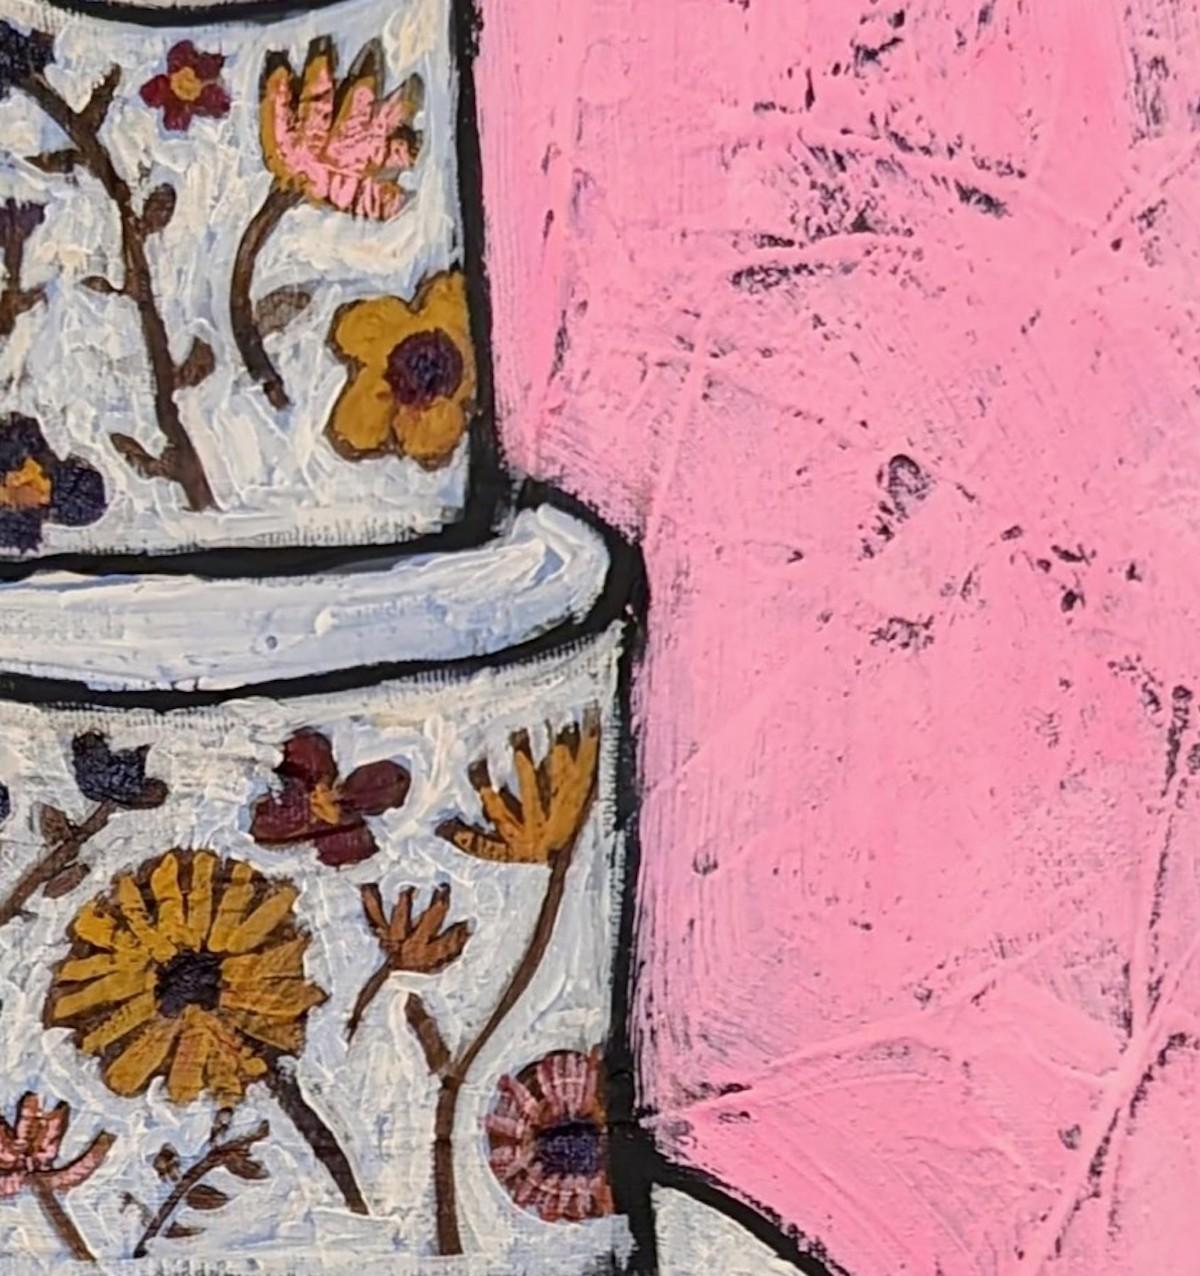 Incroyable gâteau à fleurs Edible, nature morte lumineuse, art populaire contemporain - Contemporain Painting par Kerry Louise Bennett